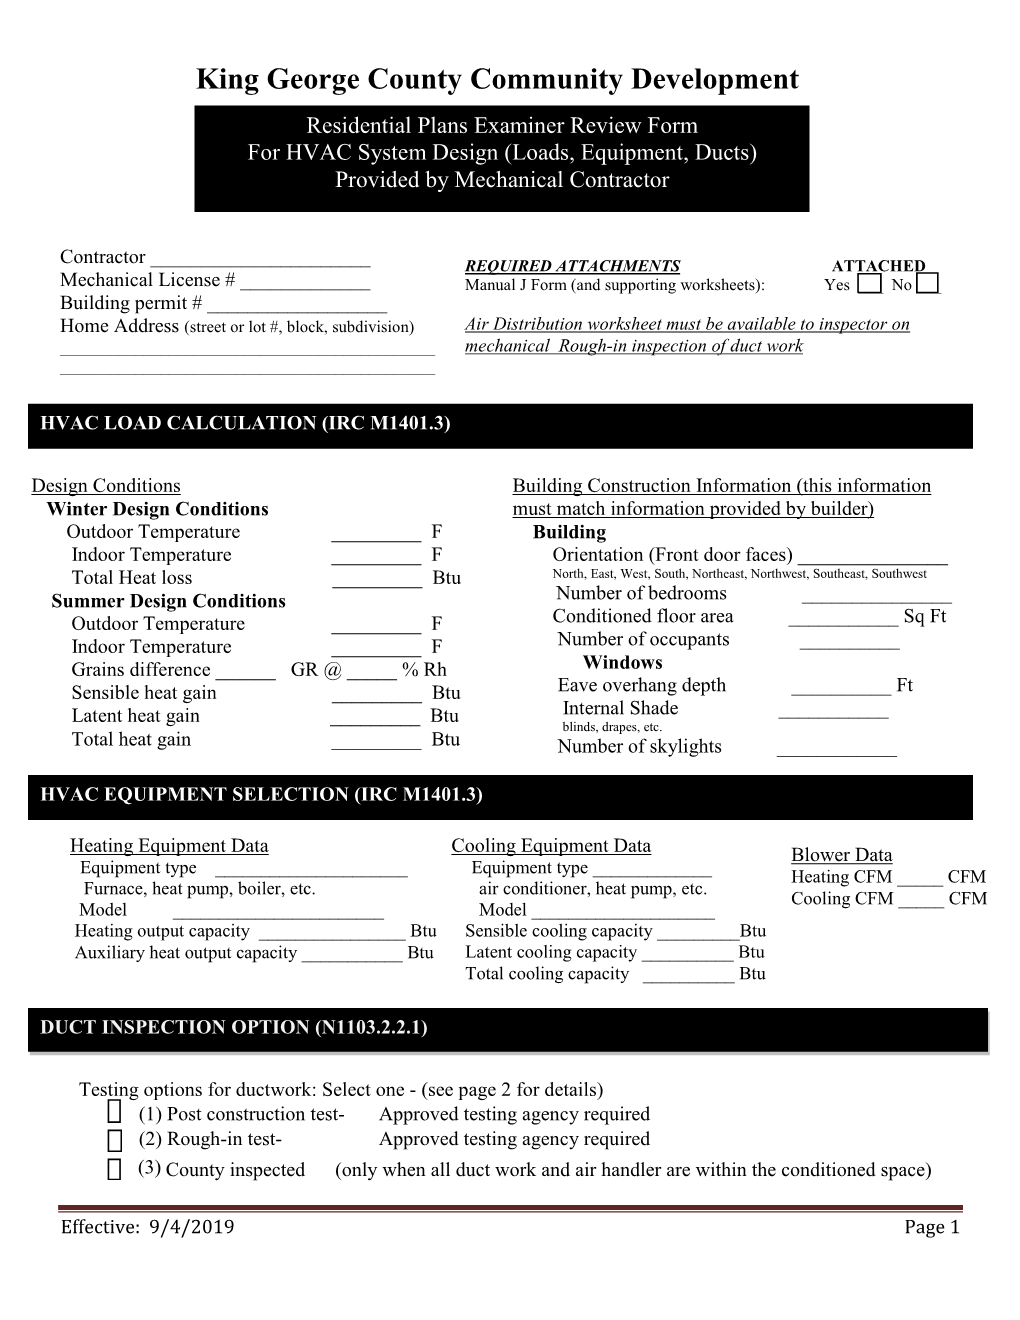 HVAC Design Plan Review Form